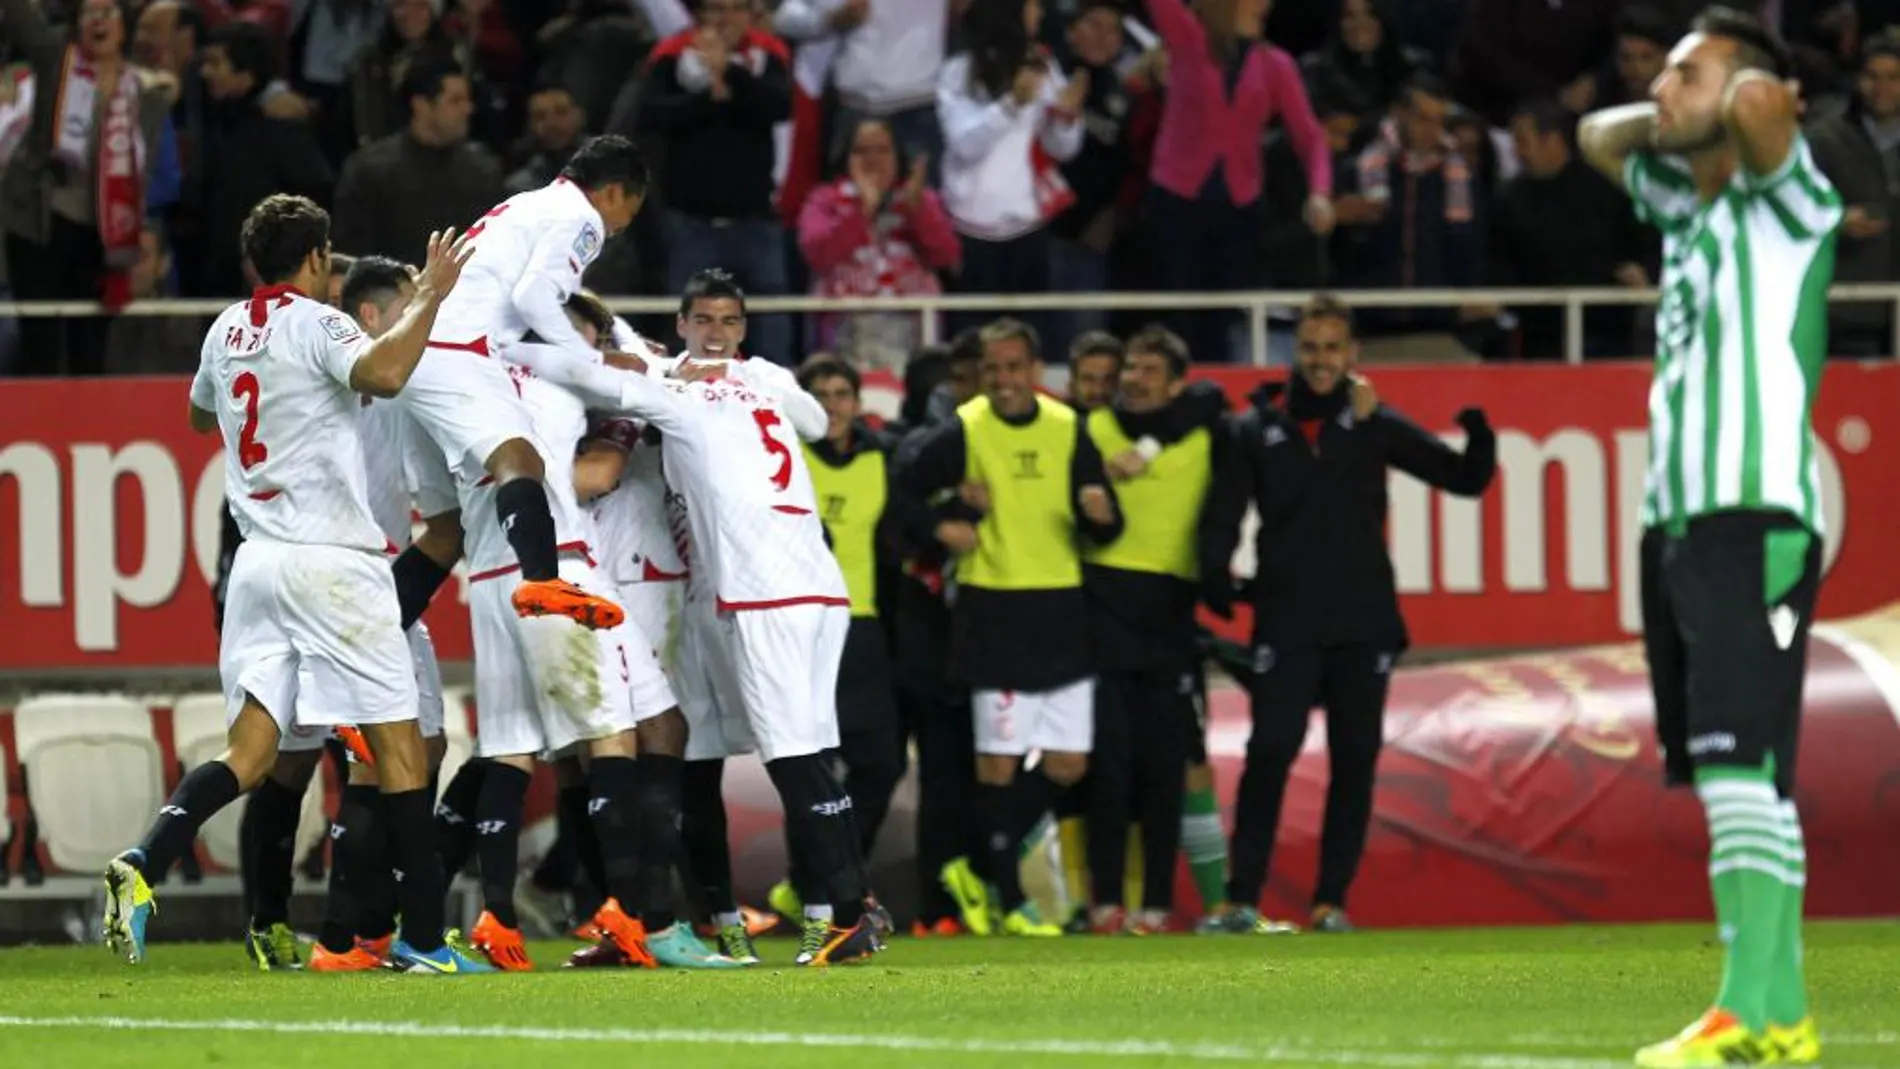 Los jugadores del Sevilla FC celebran su segundo gol ante el Real Betis. EFE/JOSÉ MANUEL VIDAL